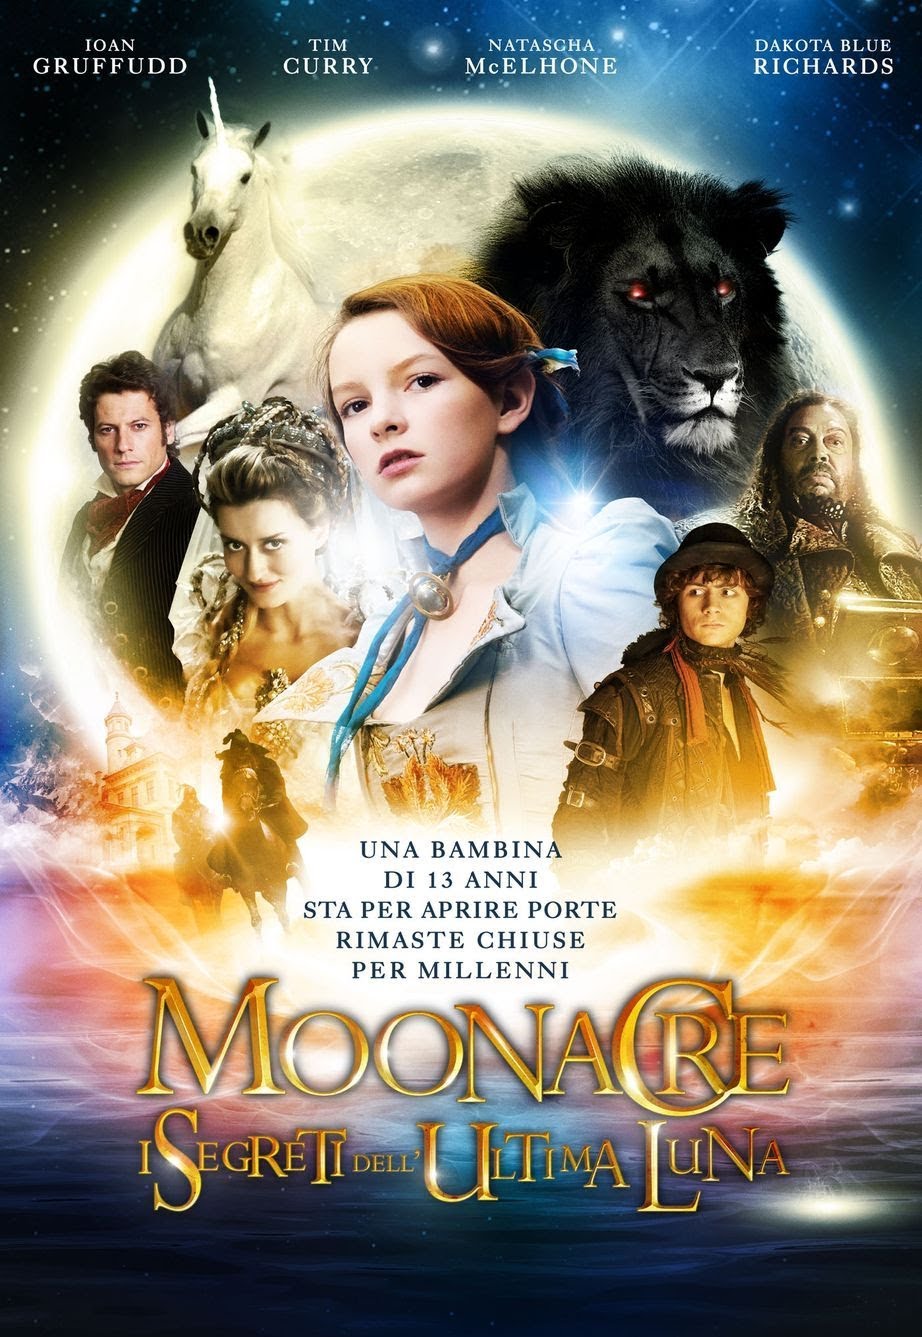 Moonacre – I segreti dell’ultima luna [HD] (2009)